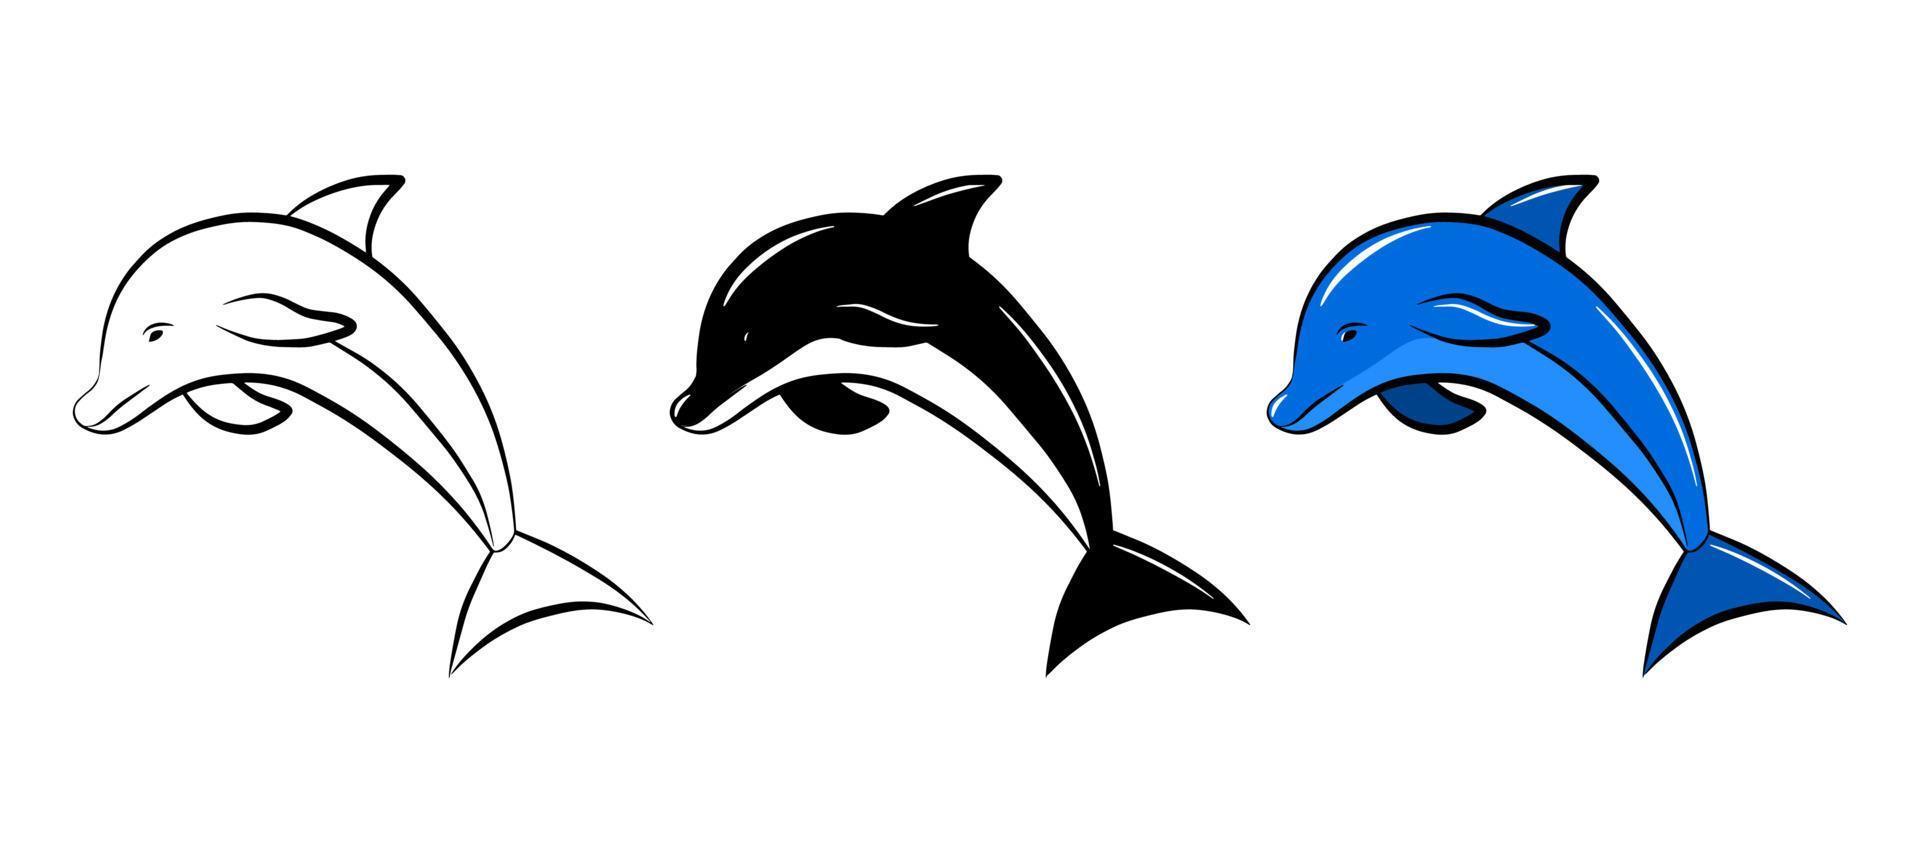 Insieme dell'icona di vettore del pesce delfino. elemento di design del logo grafico isolato. animale della fauna marina acquatica. scarabocchiare modello di disegno monocromatico. adesivo di schizzo di contorno. pagina da colorare per bambini simpatico abitante dell'oceano